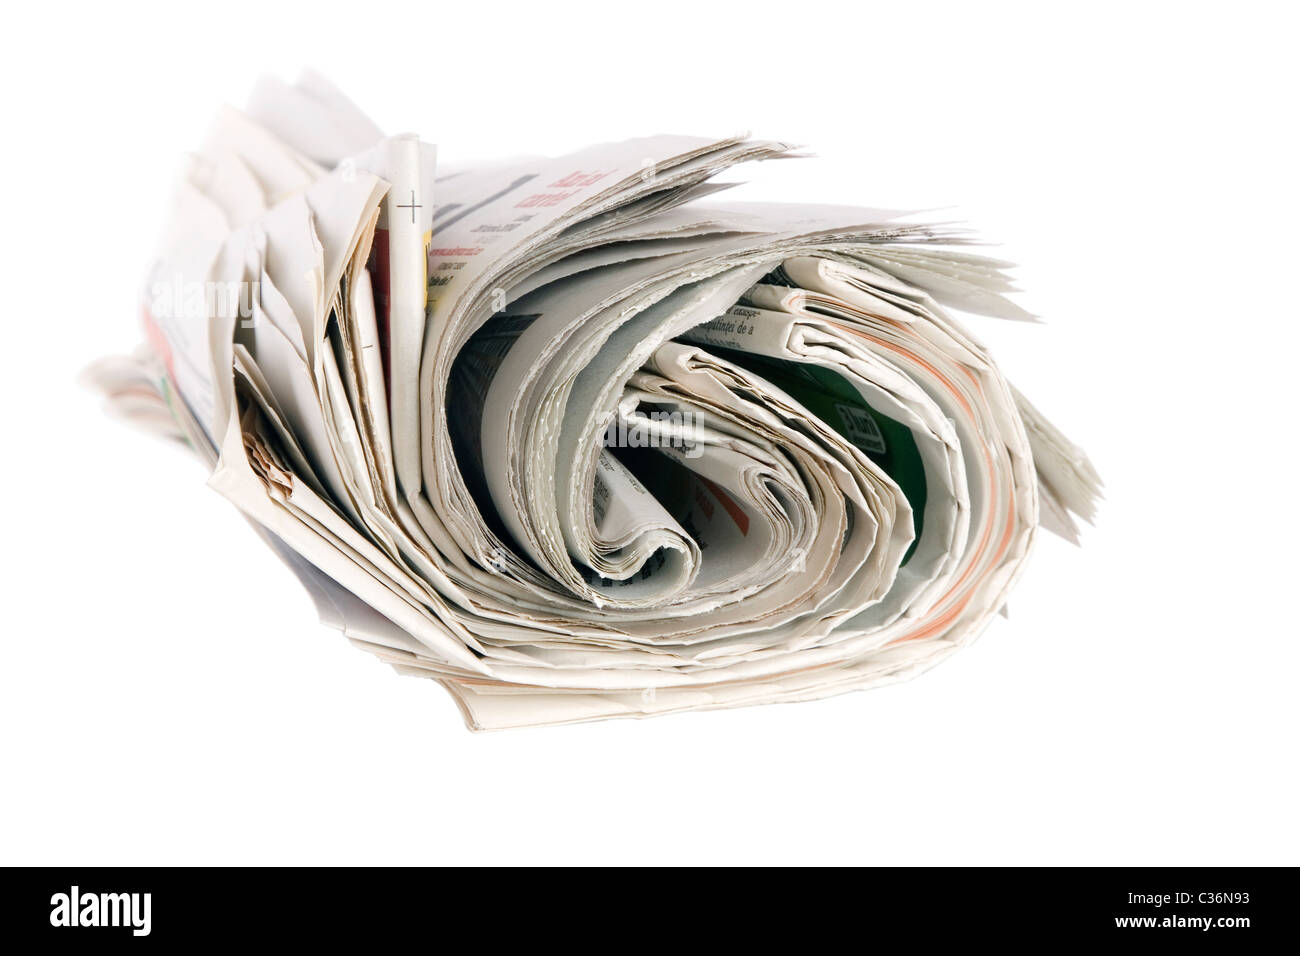 Rouleau de journaux, isolé sur fond blanc Banque D'Images